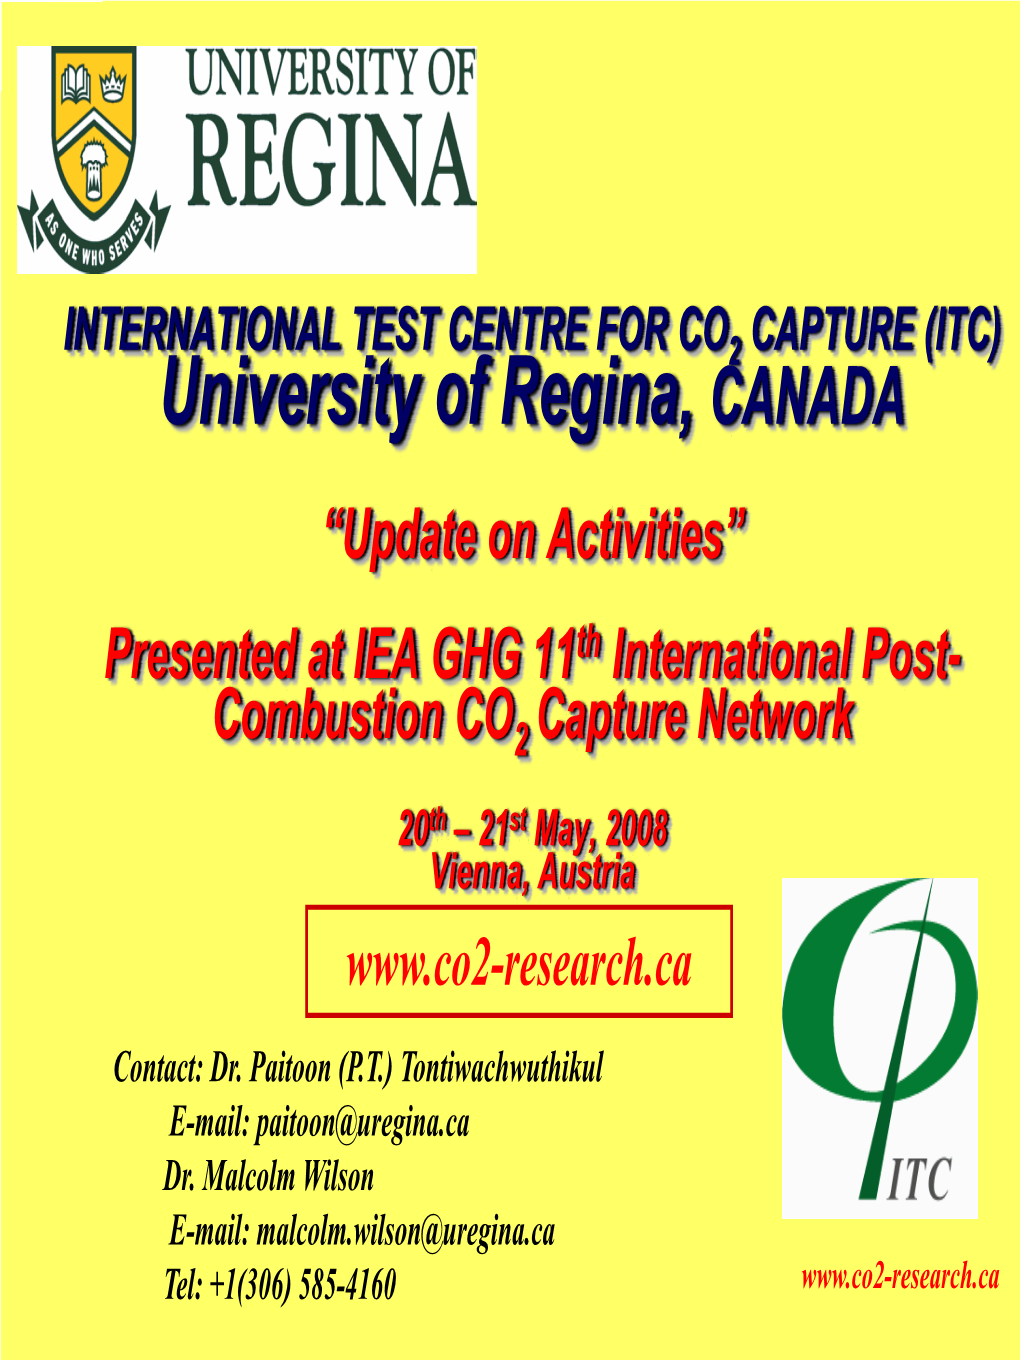 University of Regina, CANADA